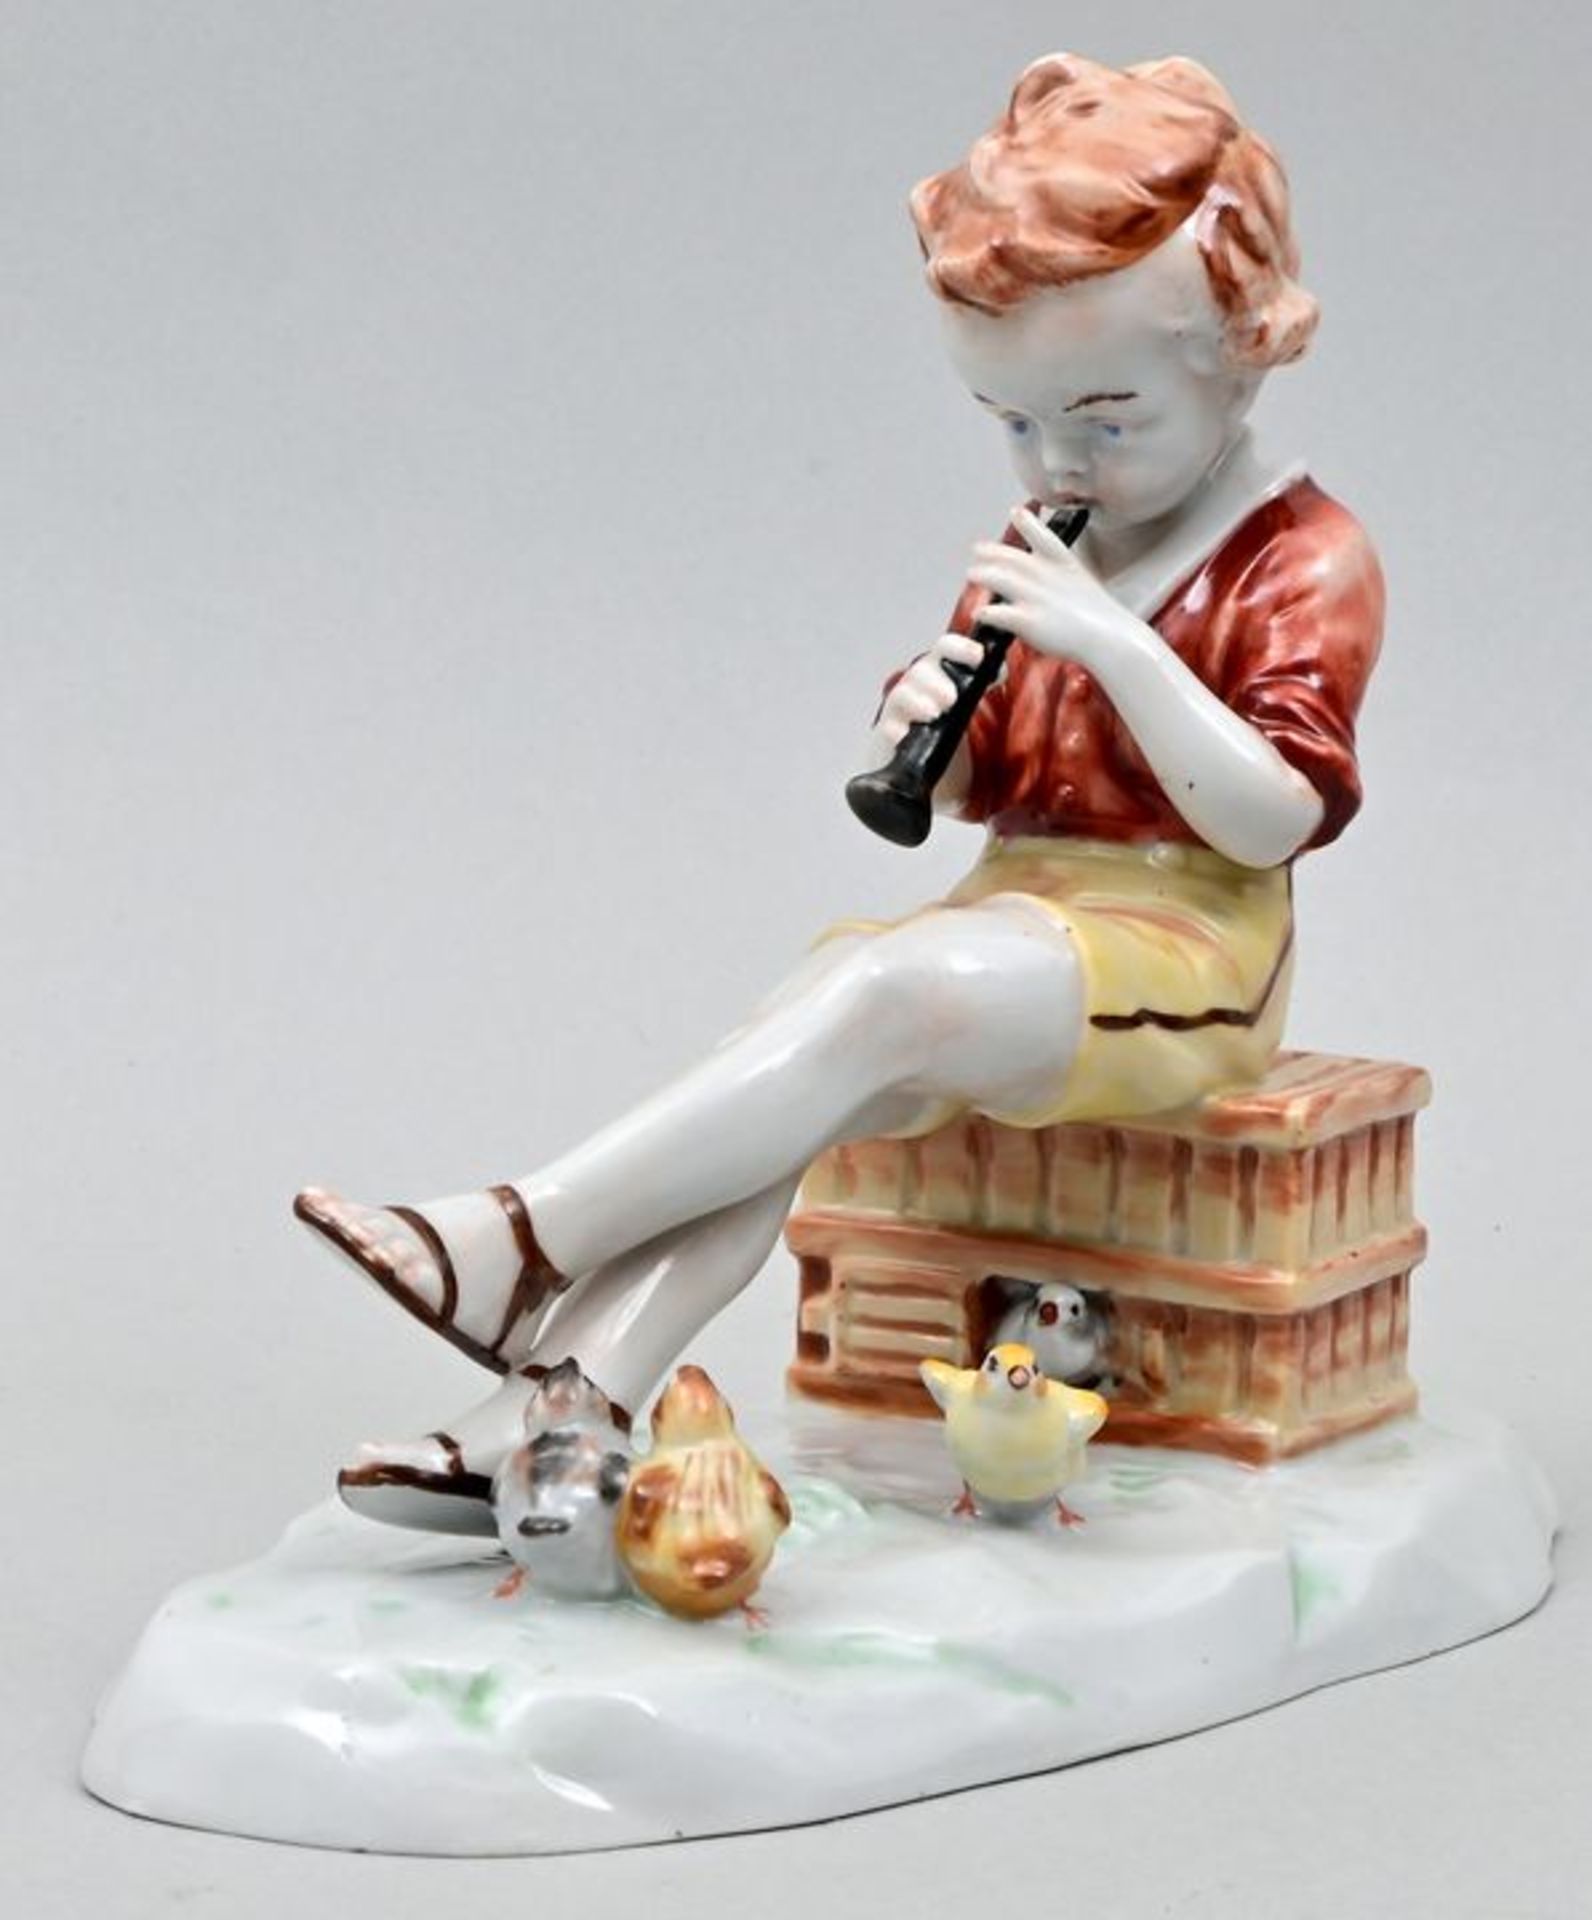 Porzellanfigur Kind / Porcelain figure